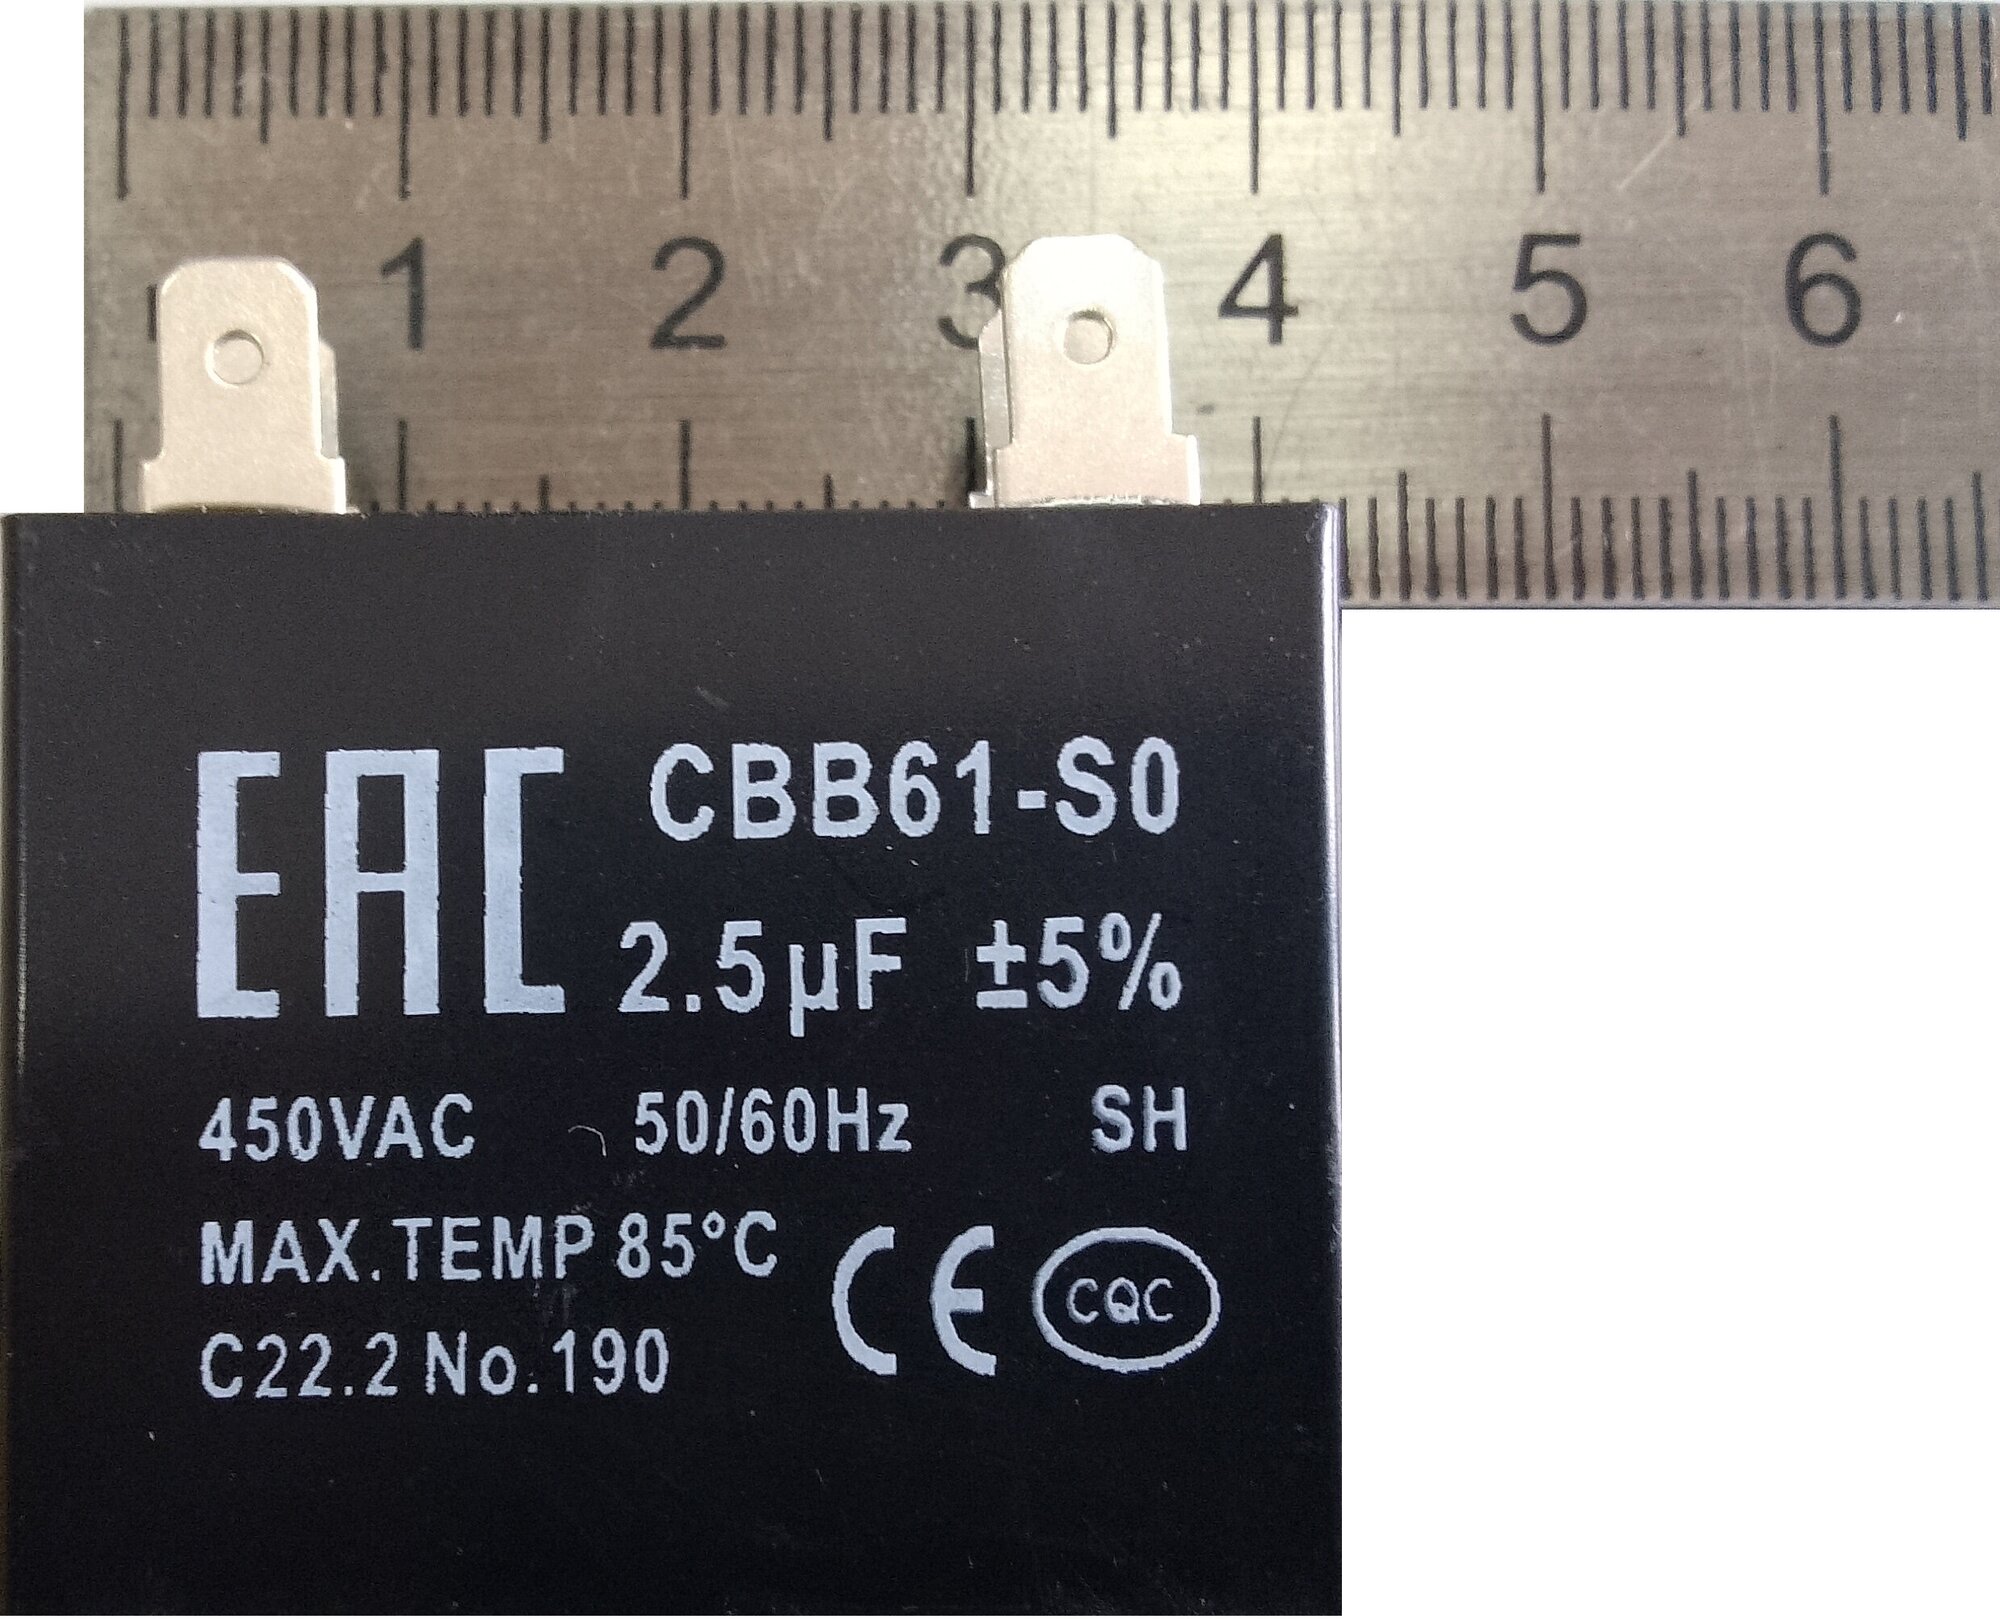 Конденсатор CBB61-S0 25 мкф С 450VAC 50/60Hz SH maxt 85°С (квадрат) для кондиционера (2шт.)